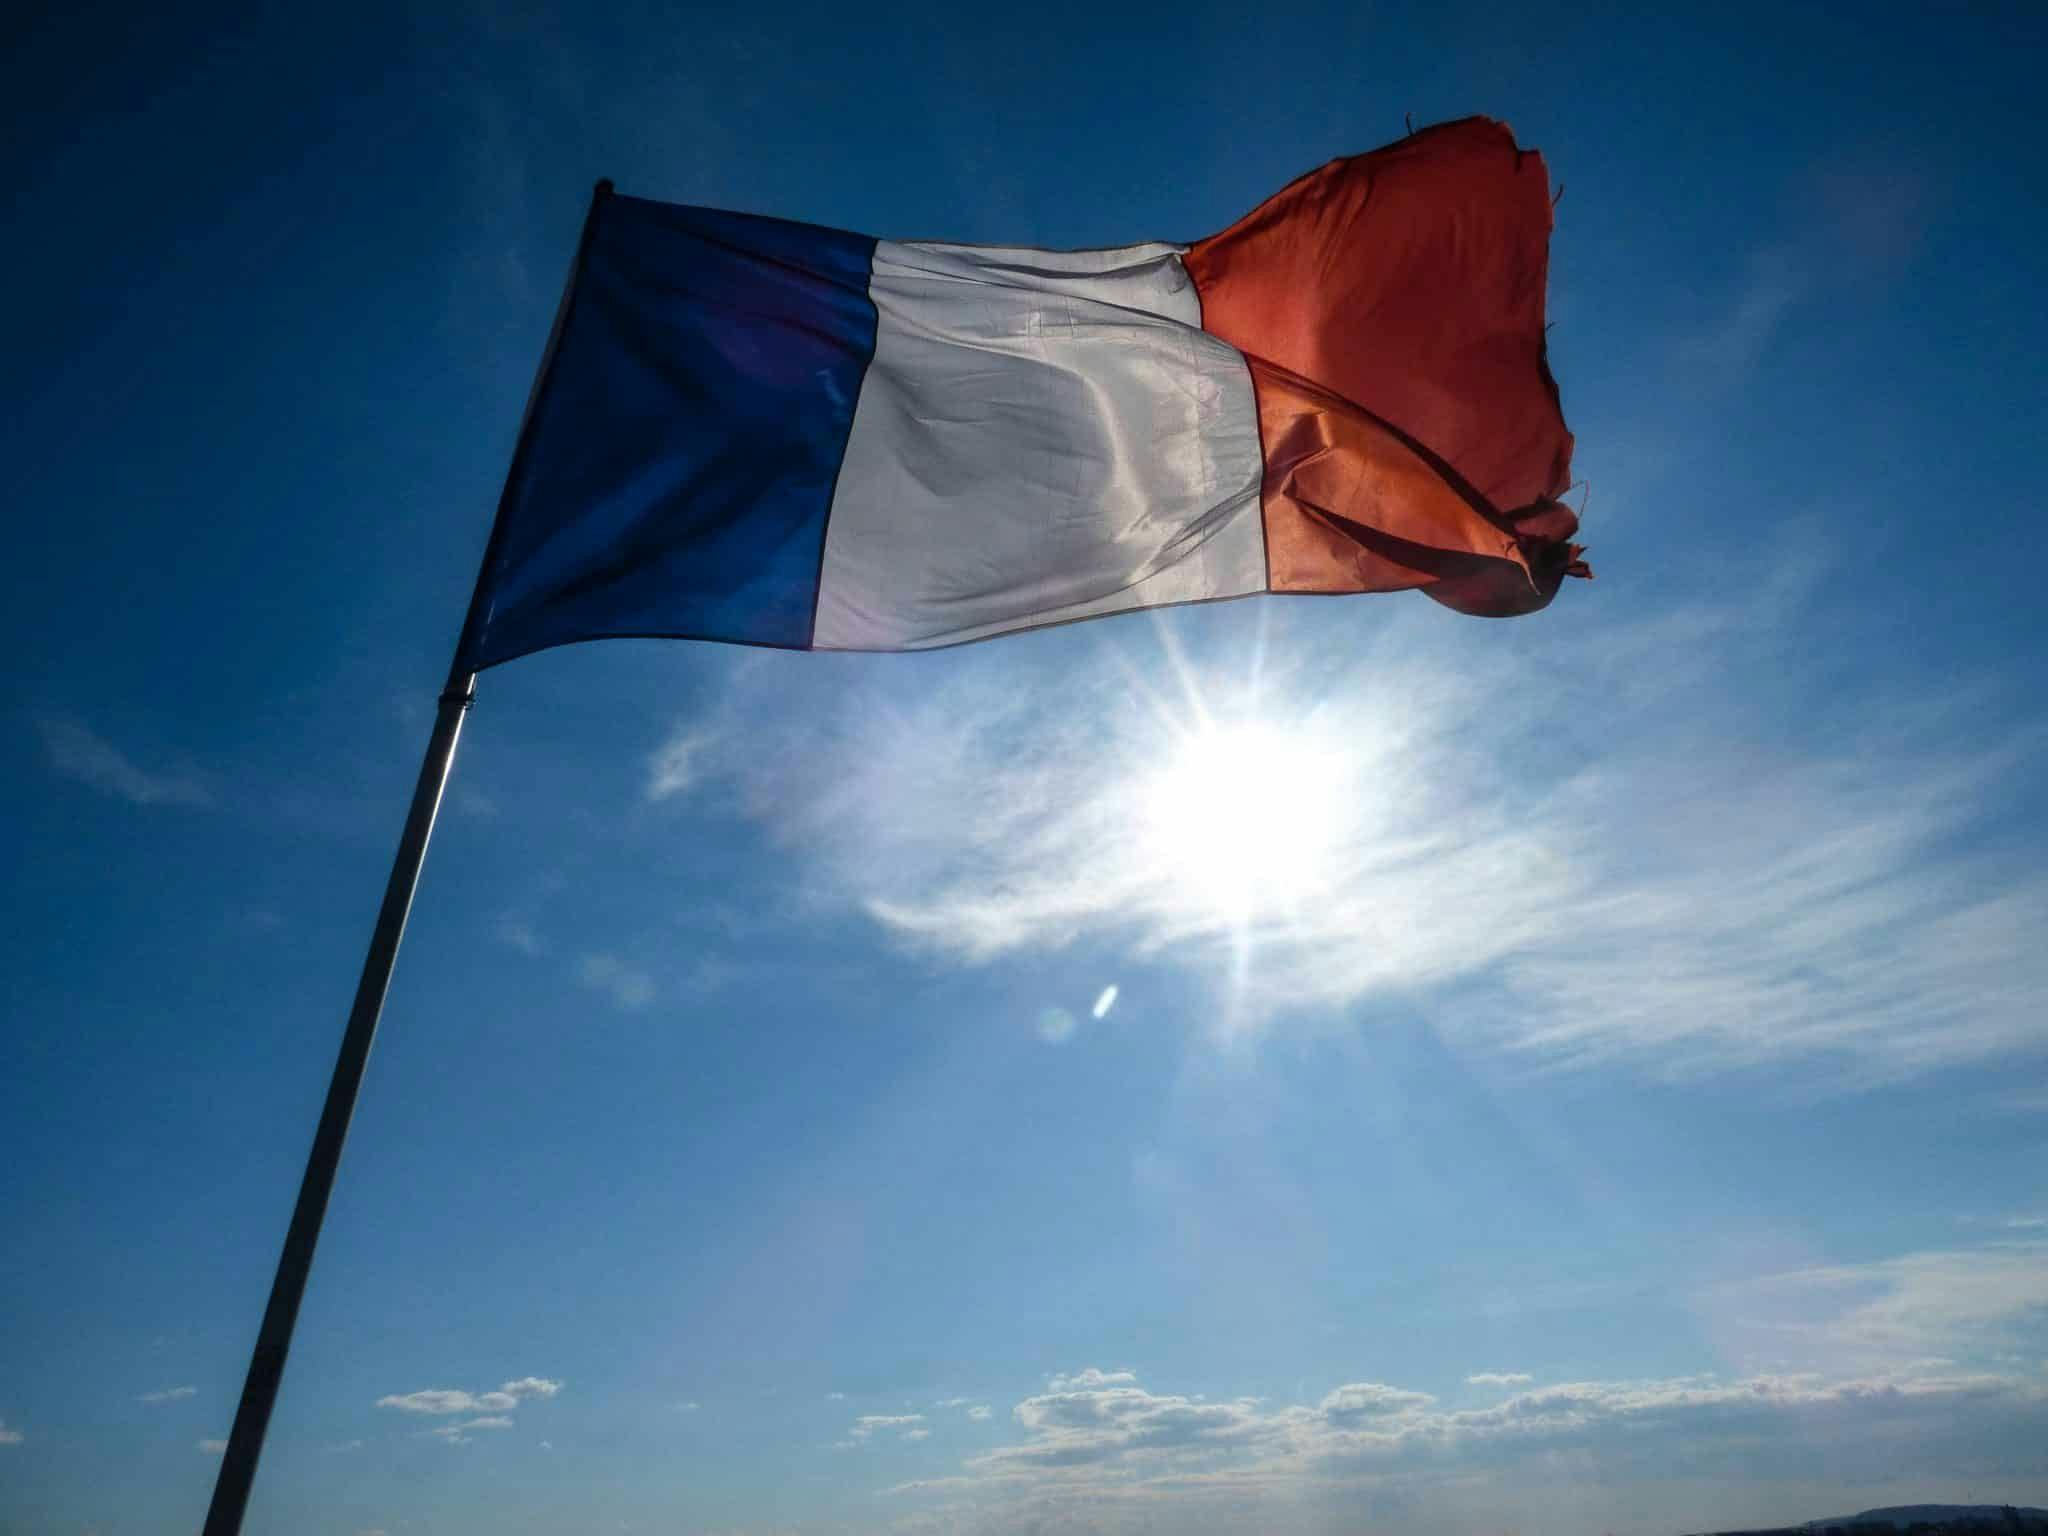 drapeau français qui flotte dans le ciel